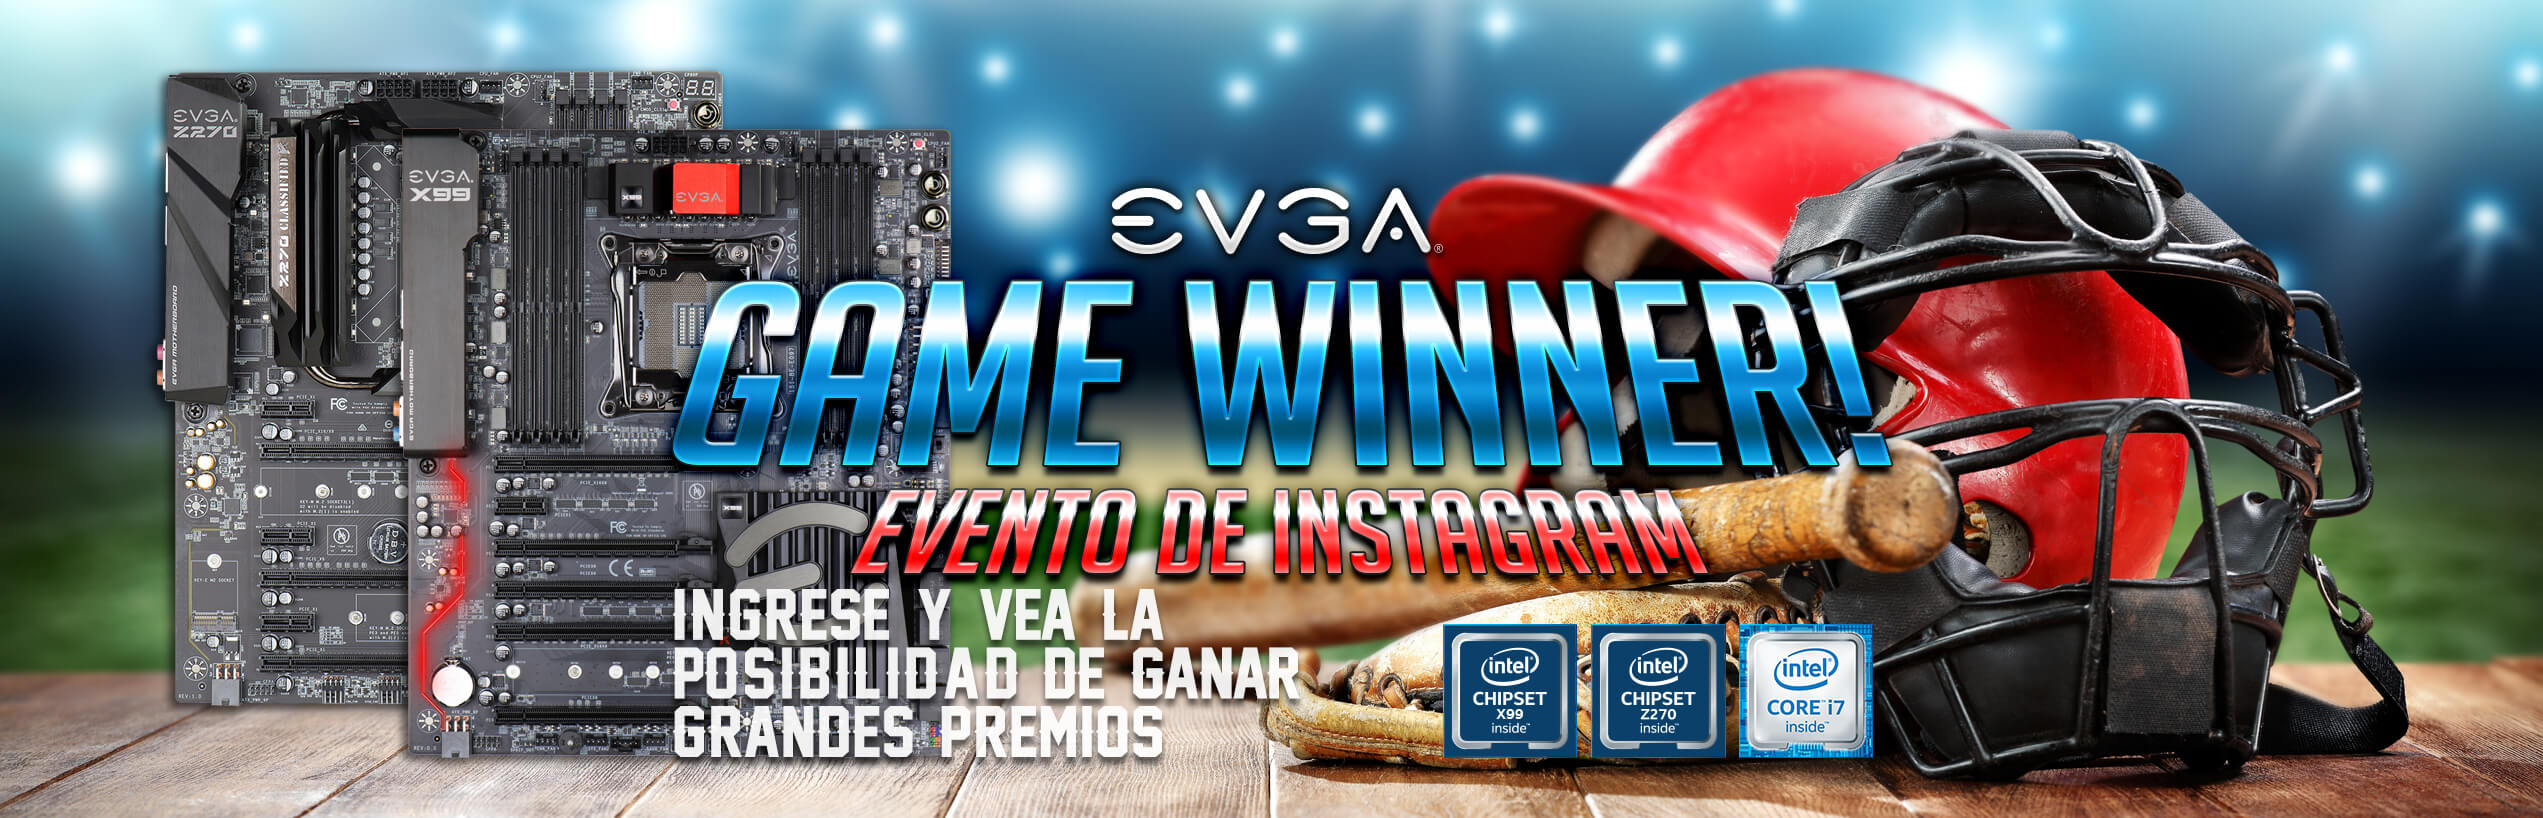 Evento de instagram: Game Winner de EVGA